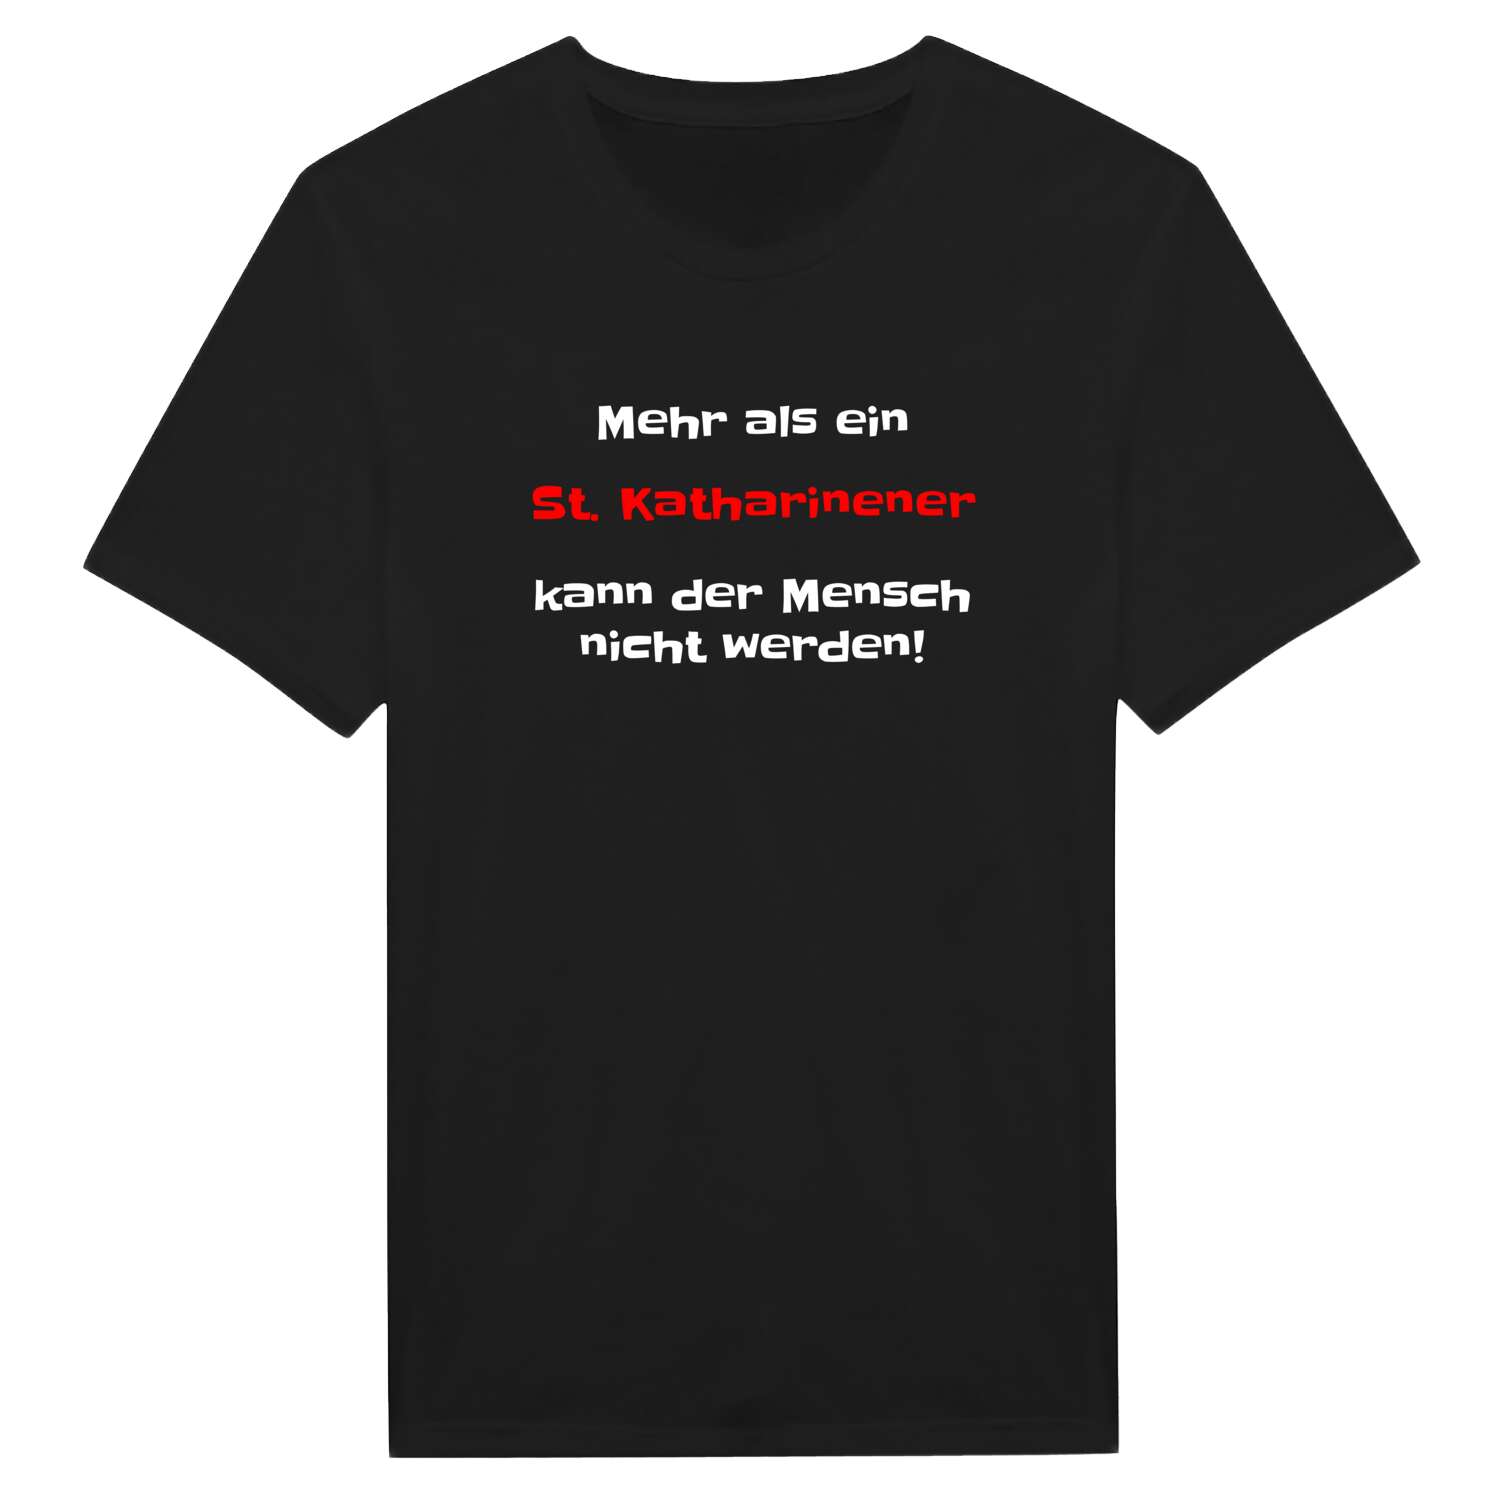 St. Katharinen T-Shirt »Mehr als ein«